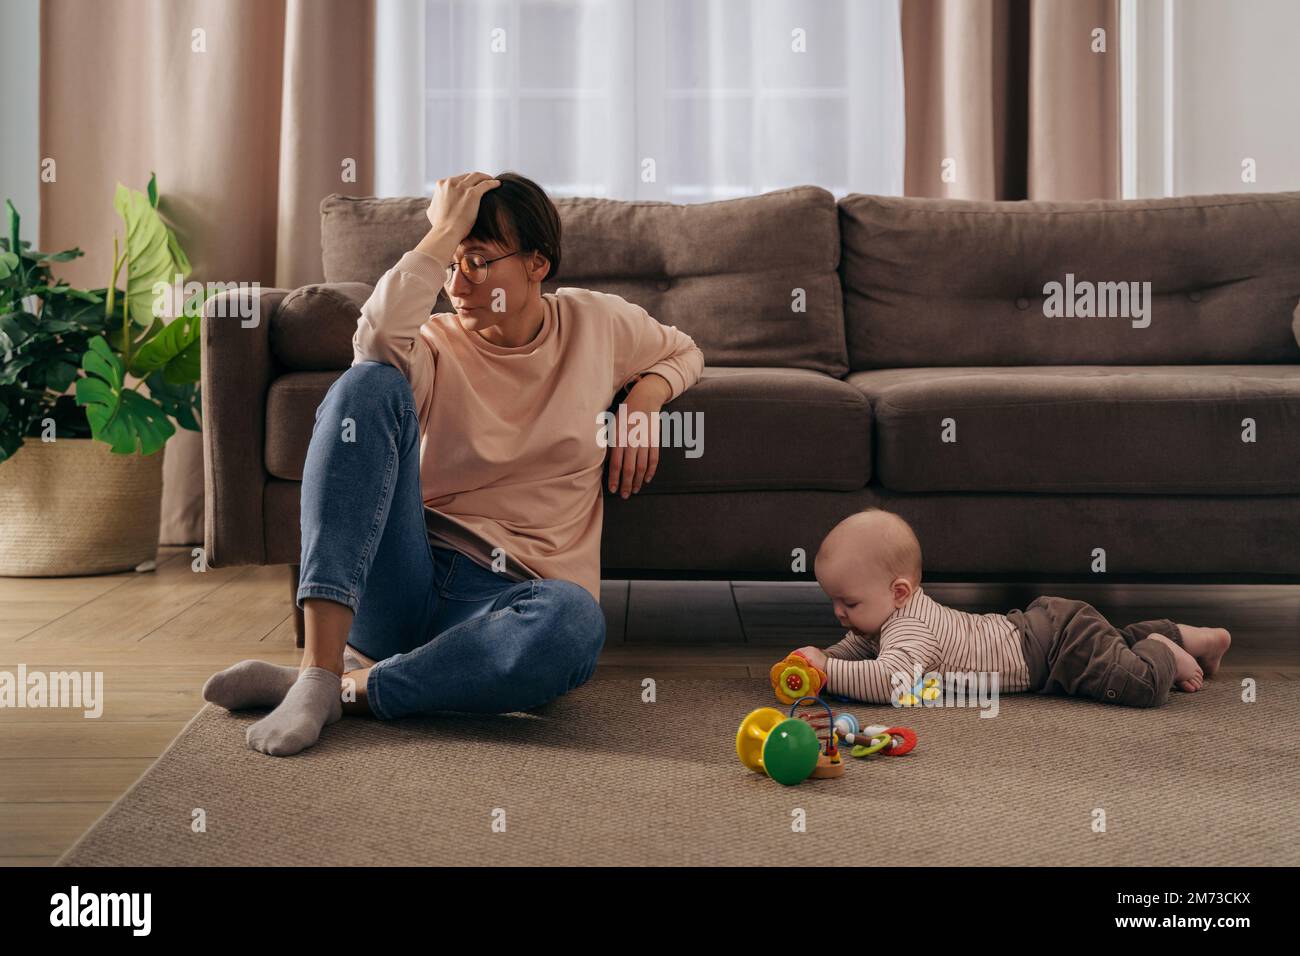 Junge müde Frau, die an postnataler Depression leidet, ihren Kopf mit der Hand hält, auf dem Boden im Wohnzimmer neben ihrem Kleinkinder sitzt und mit Spielzeug spielt. Neue mutter müde von Mutterschaftsschwierigkeiten Stockfoto